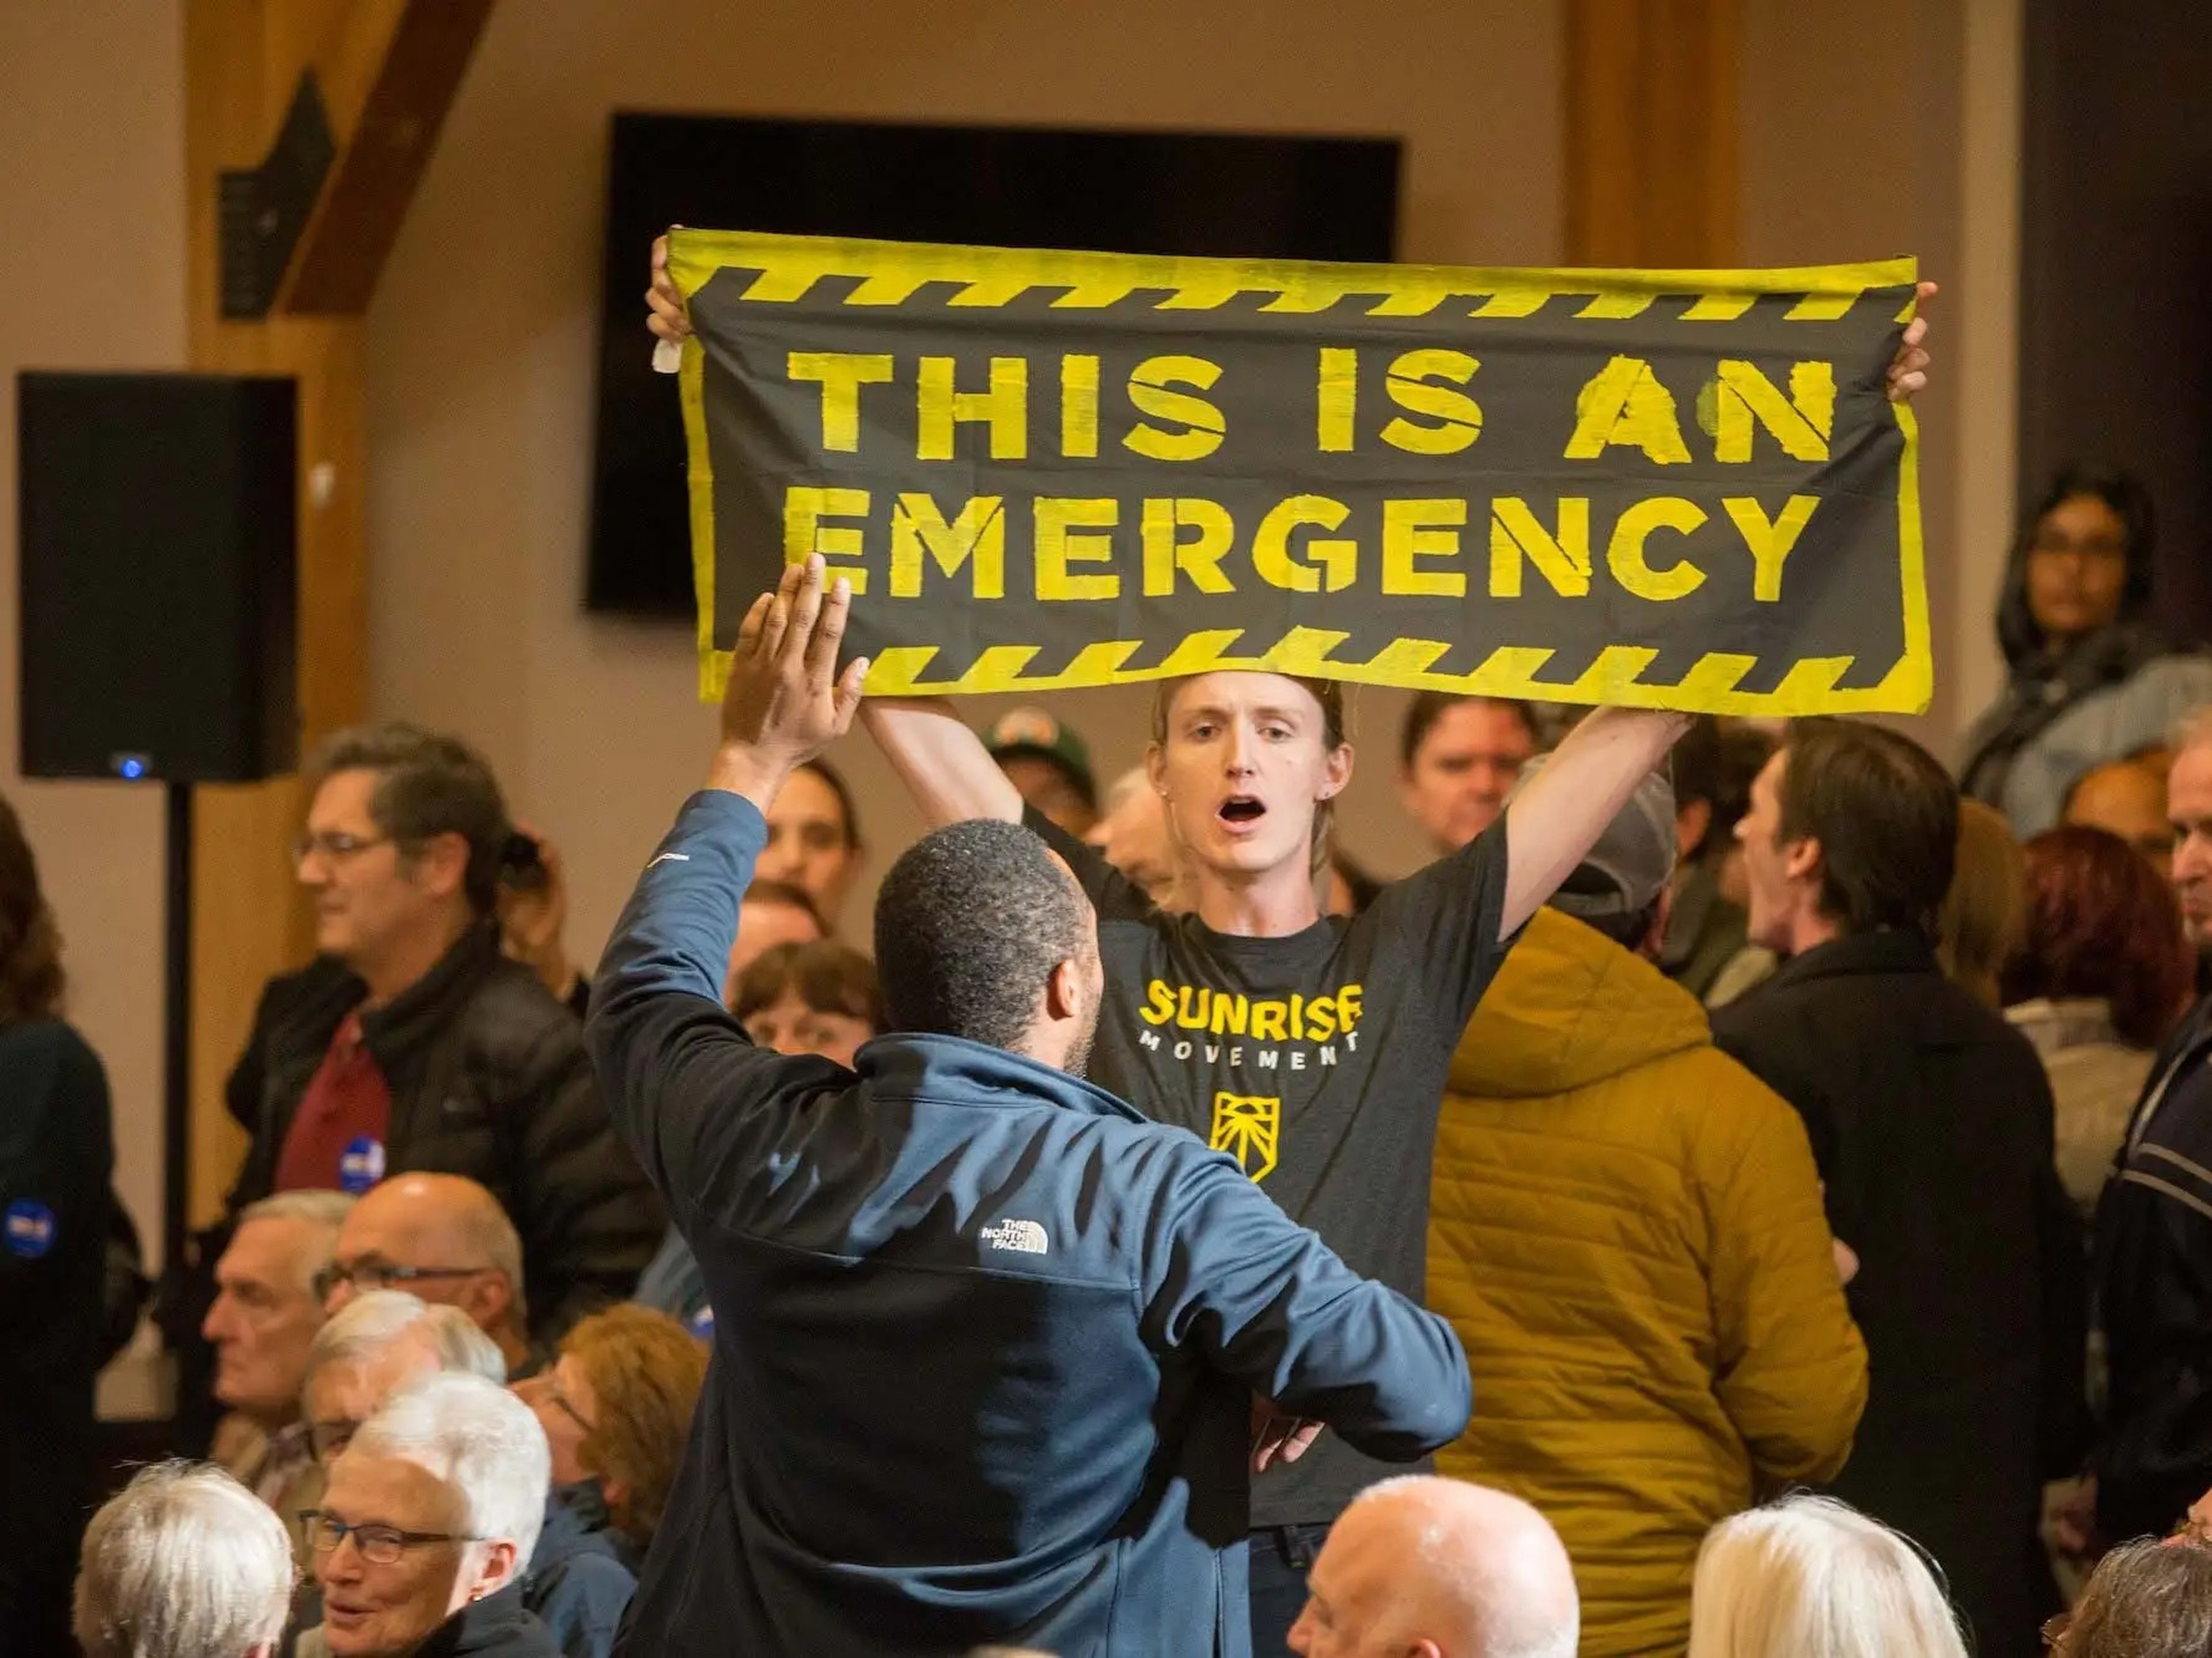 Manifestantes contra la emergencia climática interrumpen al entonces candidato Joe Biden durante un evento de campaña en New Hampshire en 2019. El Movimiento Sunrise se autodenomina un movimiento juvenil centrado en prevenir el cambio climático.